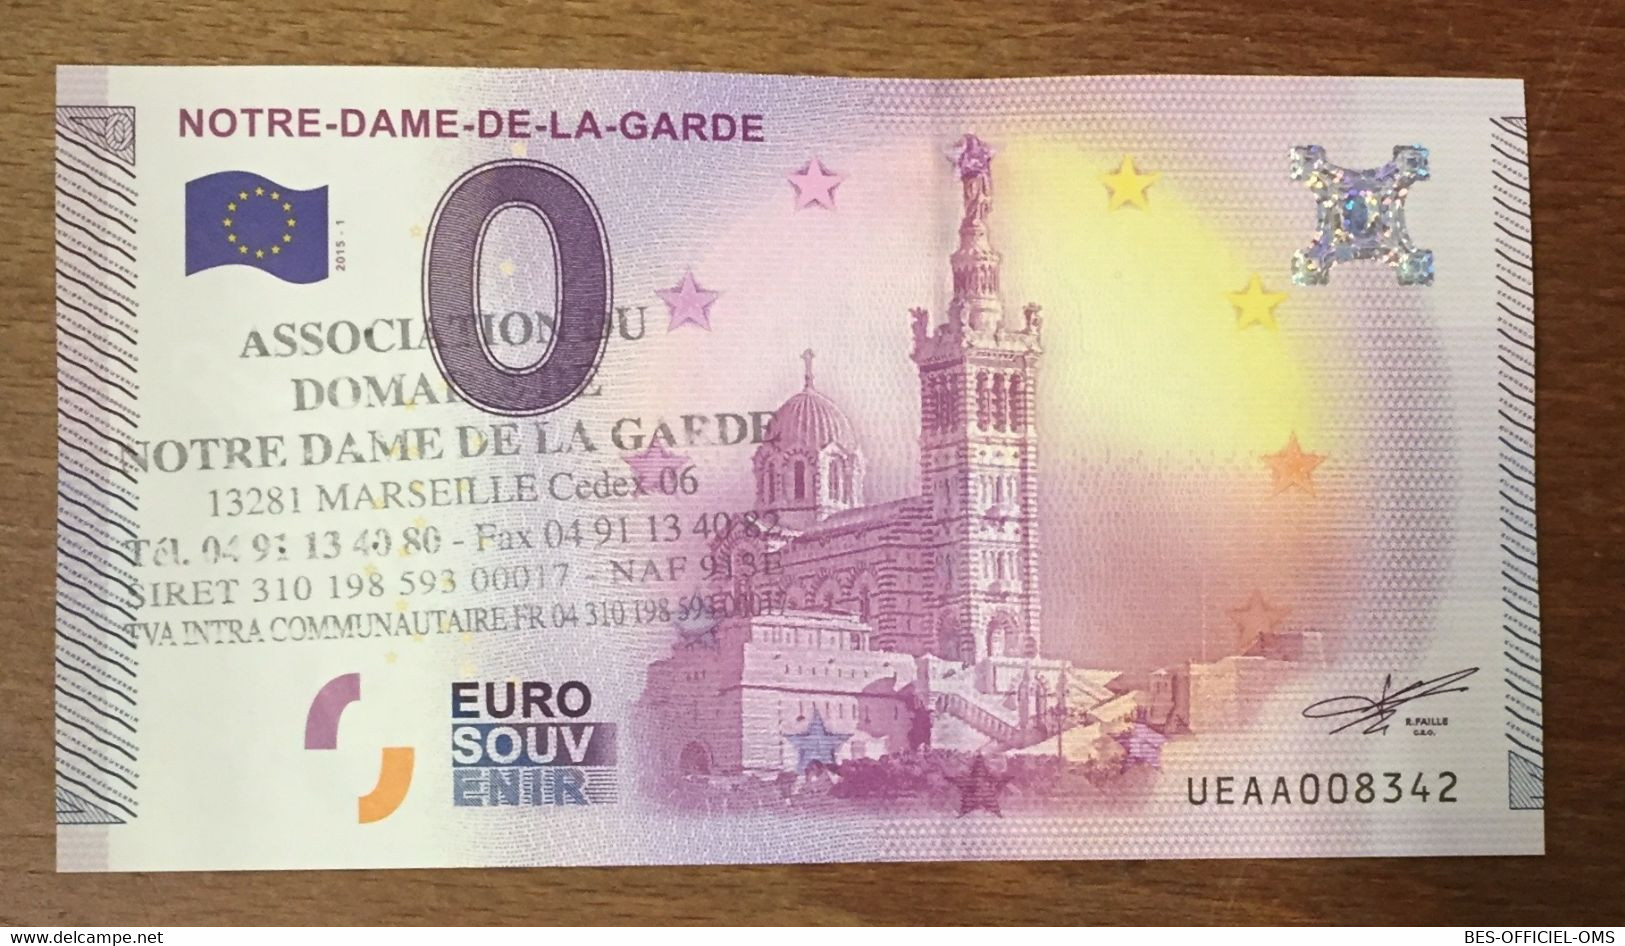 2015 BILLET 0 EURO SOUVENIR DPT 13 MARSEILLE NOTRE-DAME DE LA GARDE + TAMPON ZERO EURO SCHEIN BANKNOTE PAPER MONEY - Essais Privés / Non-officiels